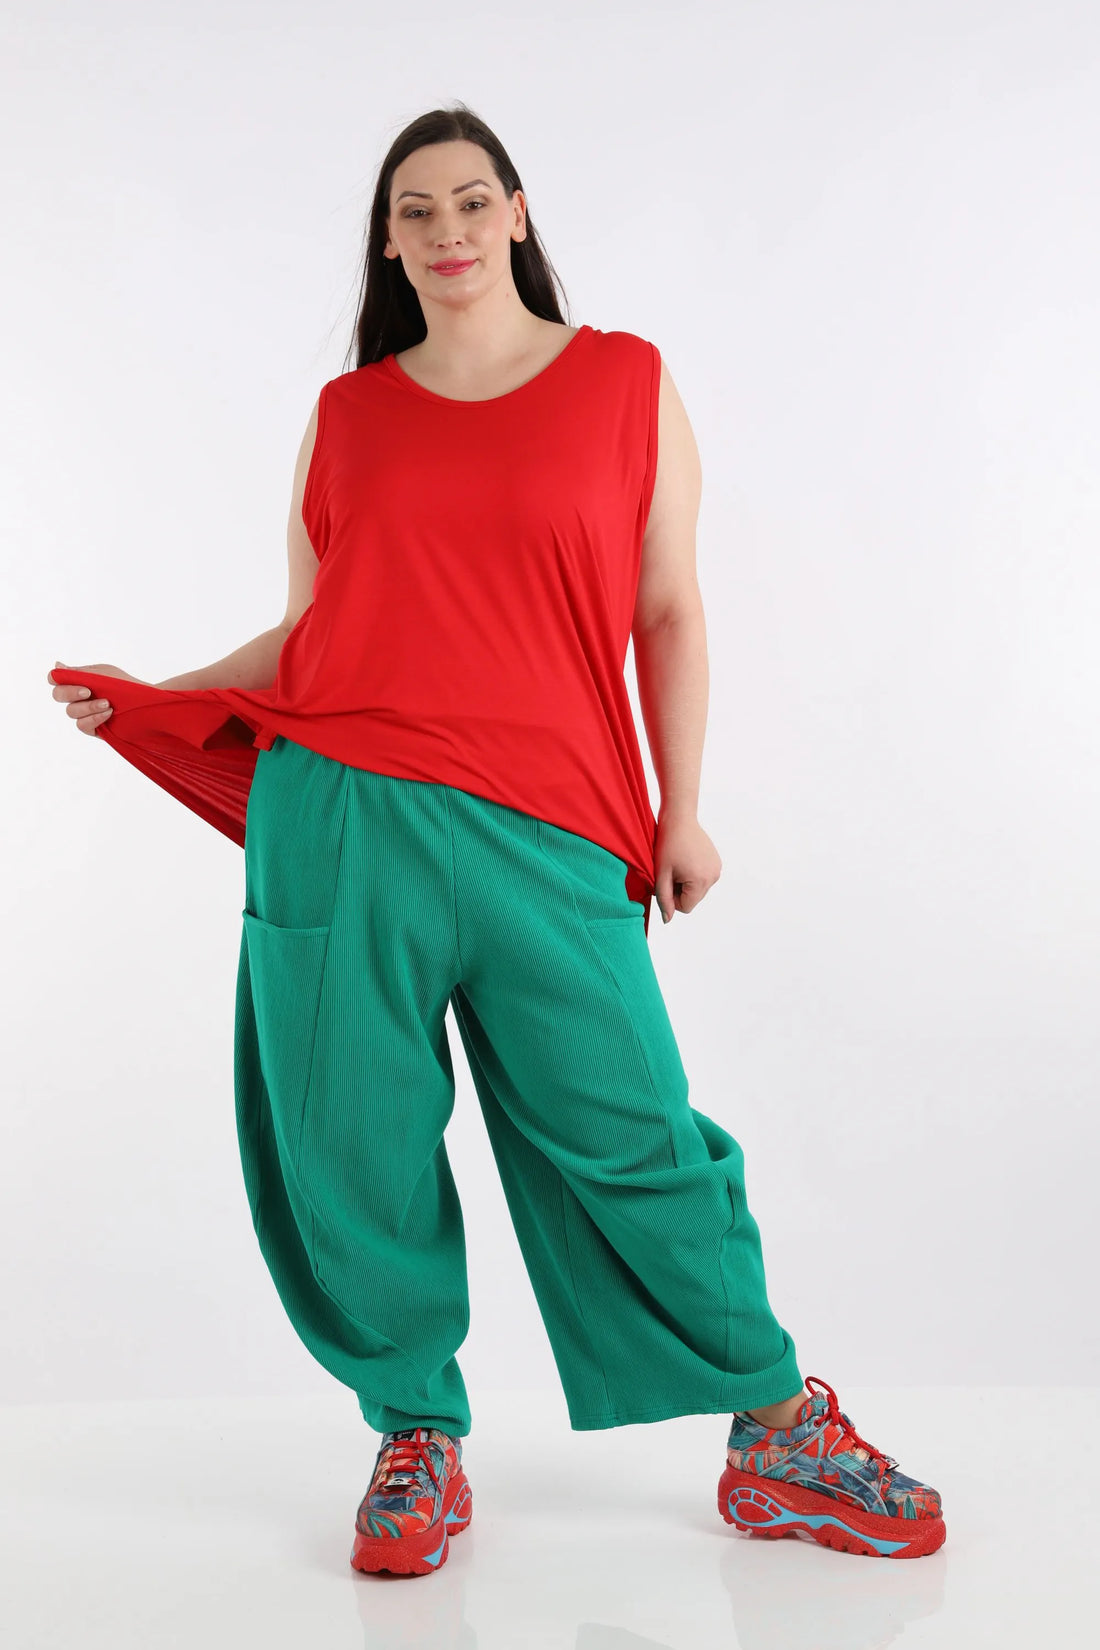 Ballonhose von AKH Fashion aus Baumwolle, 1252.08069, Grün, Unifarben, Ausgefallen, Modern